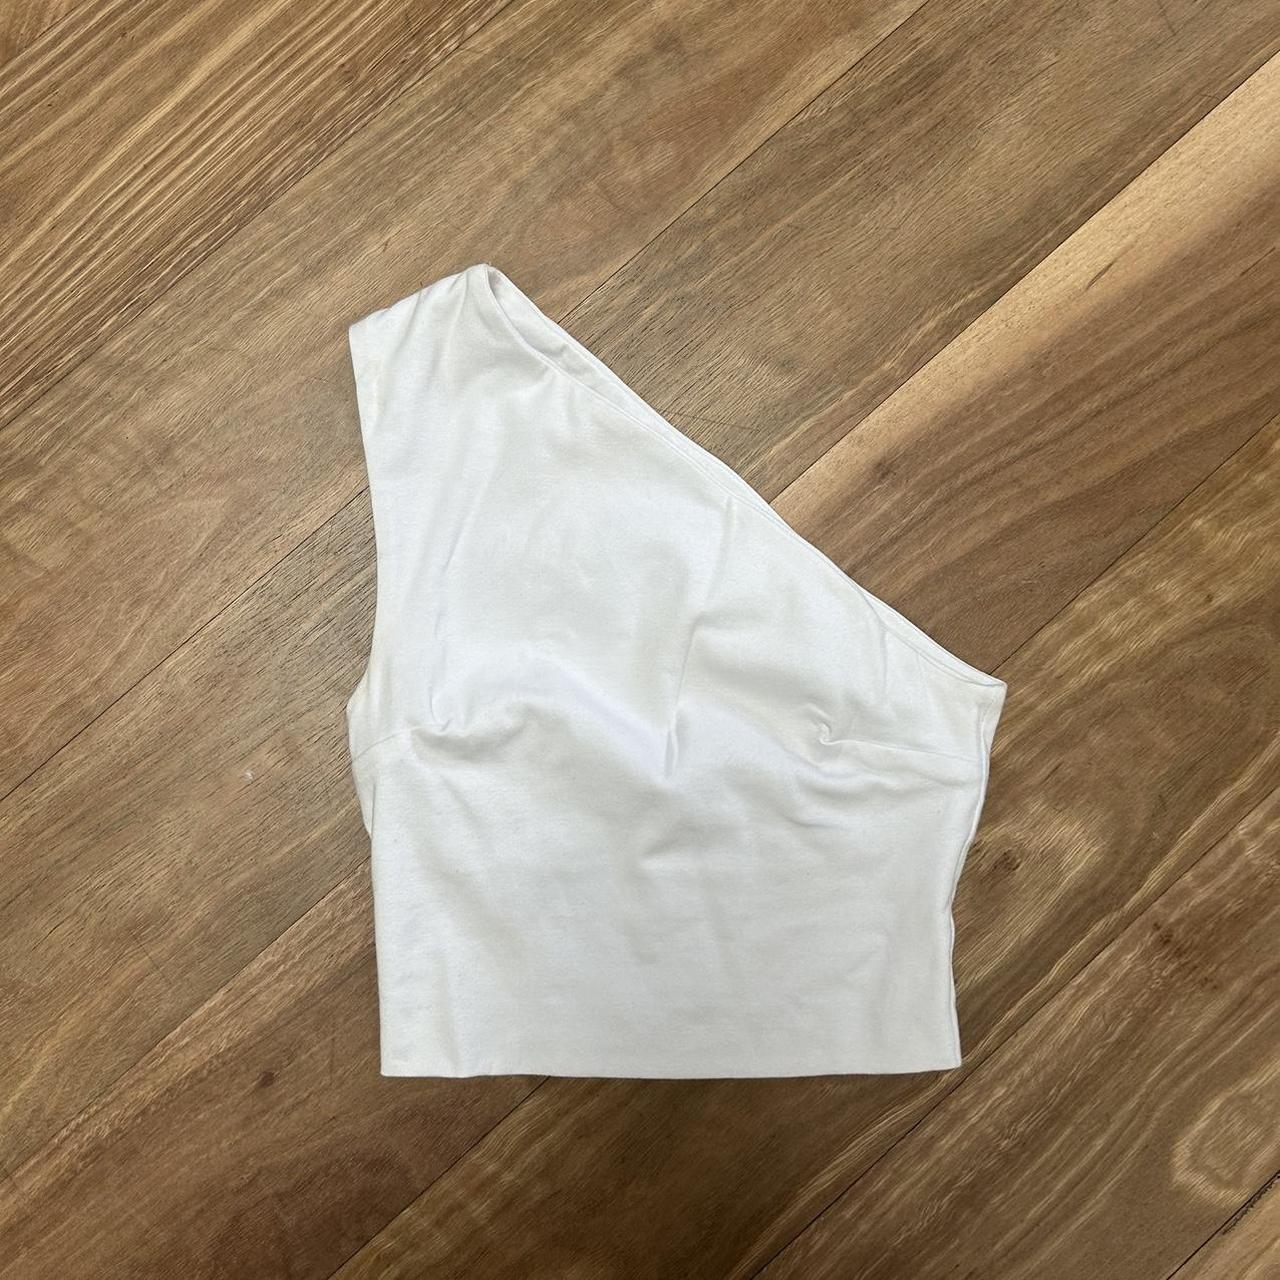 kookai alex top in white size 0/6 never worn - Depop